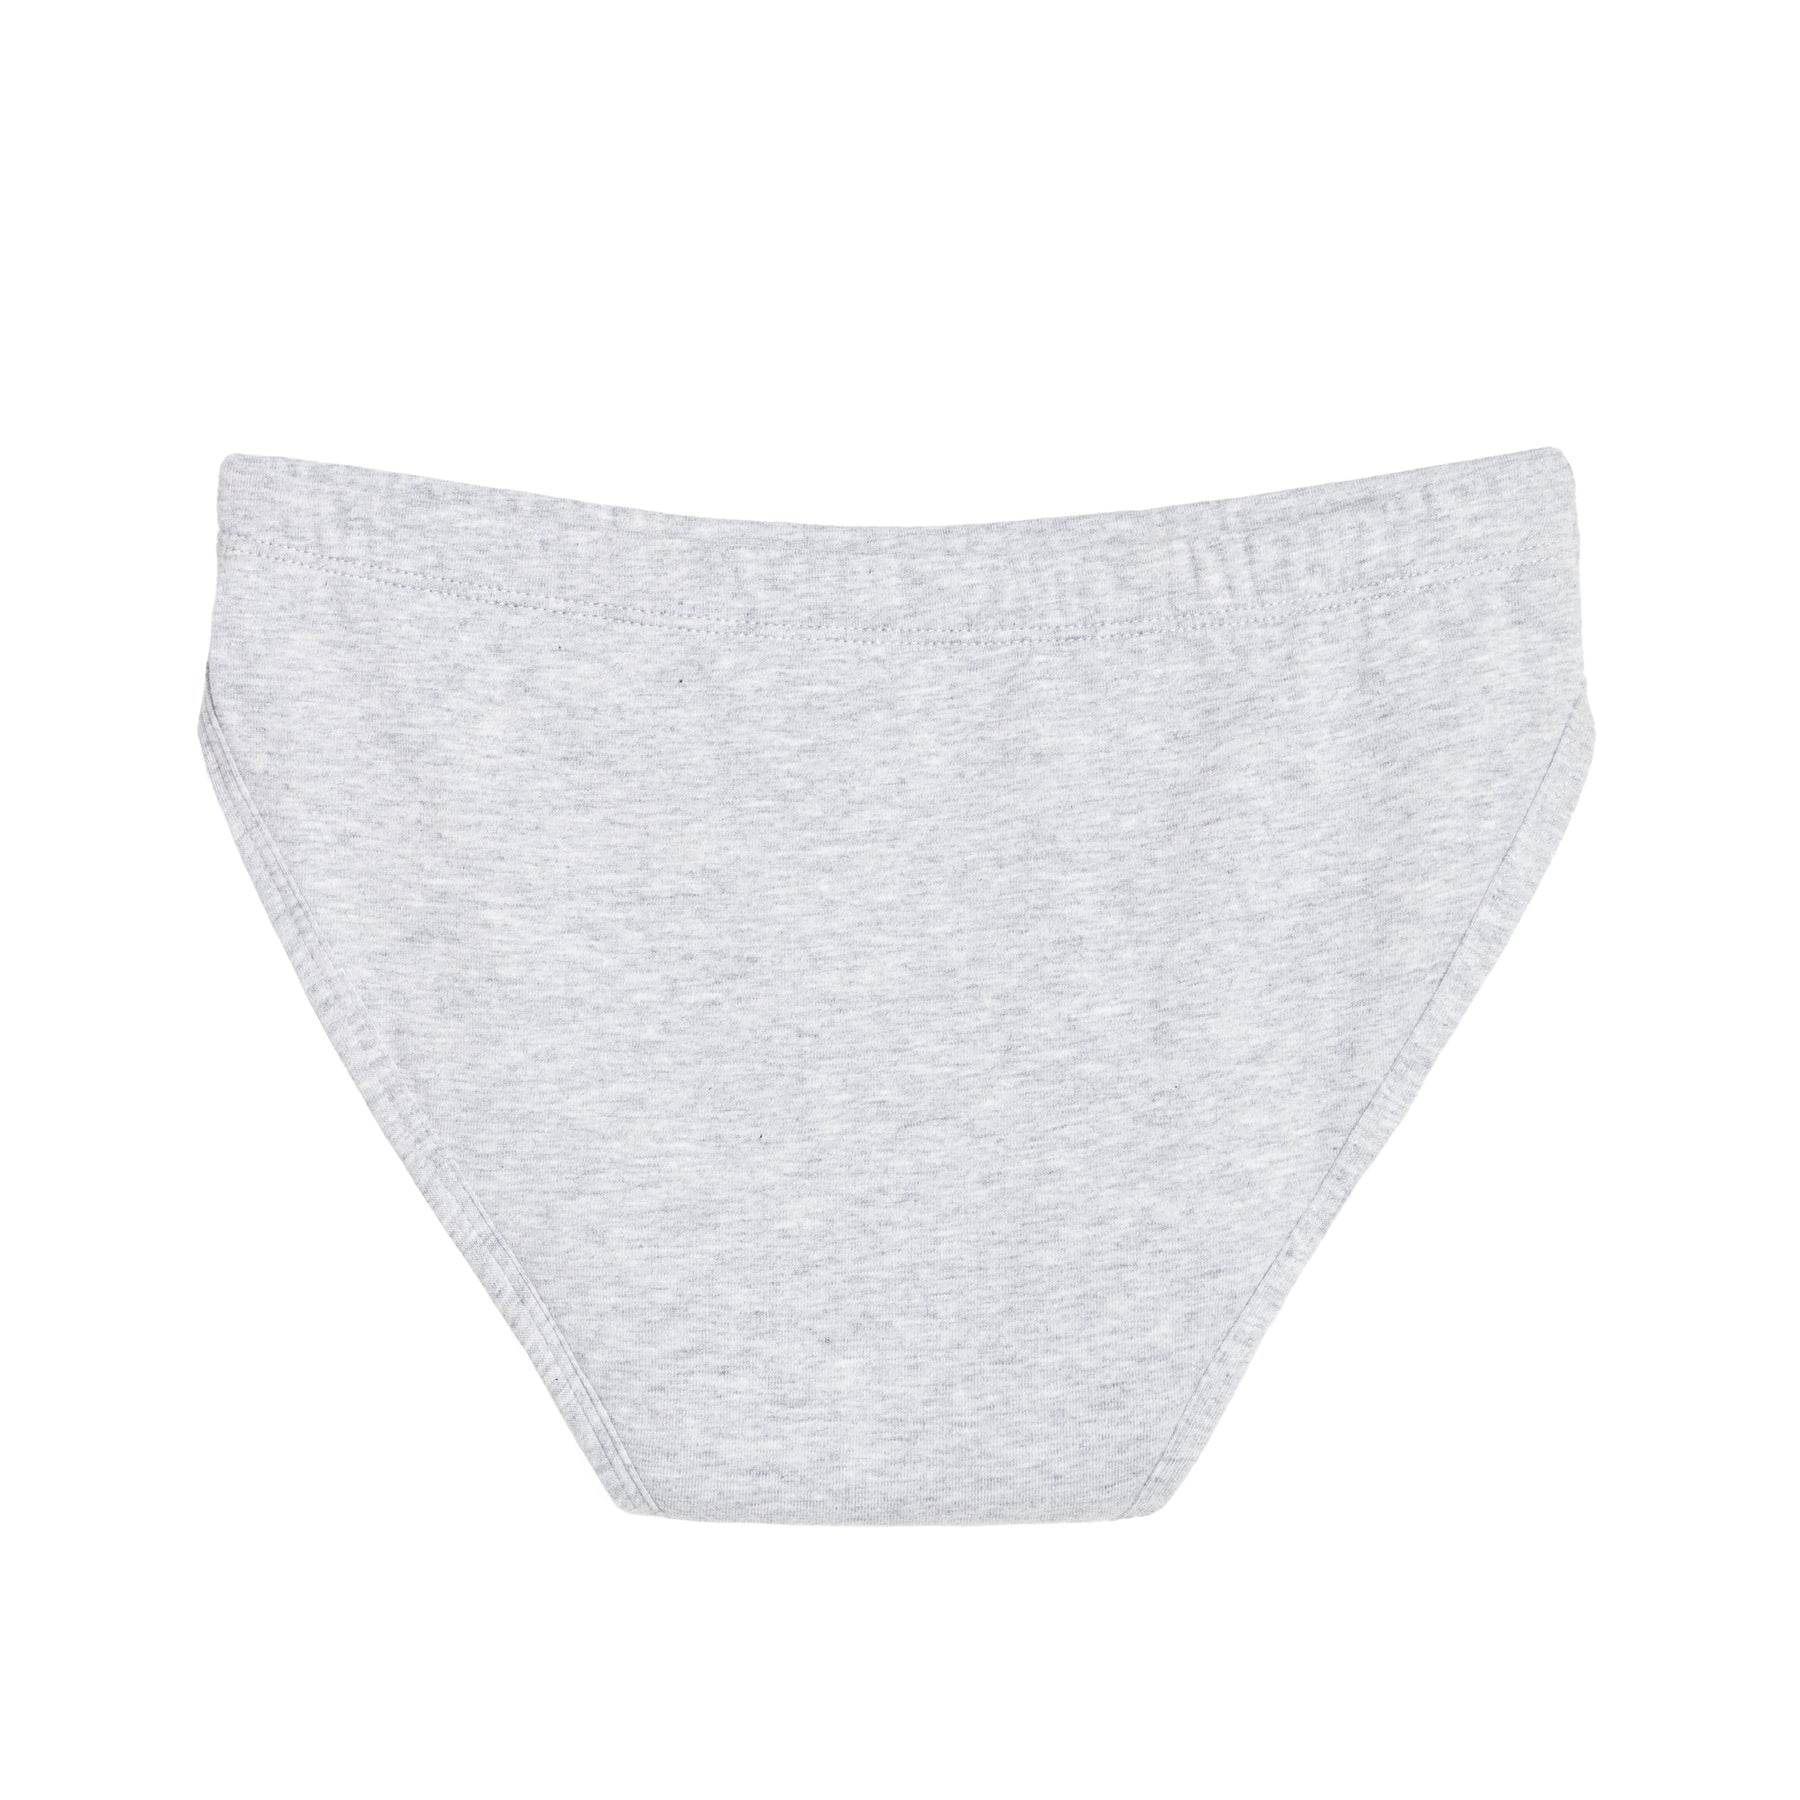 Teen Period Underwear & Swimwear – AWWA Period Care